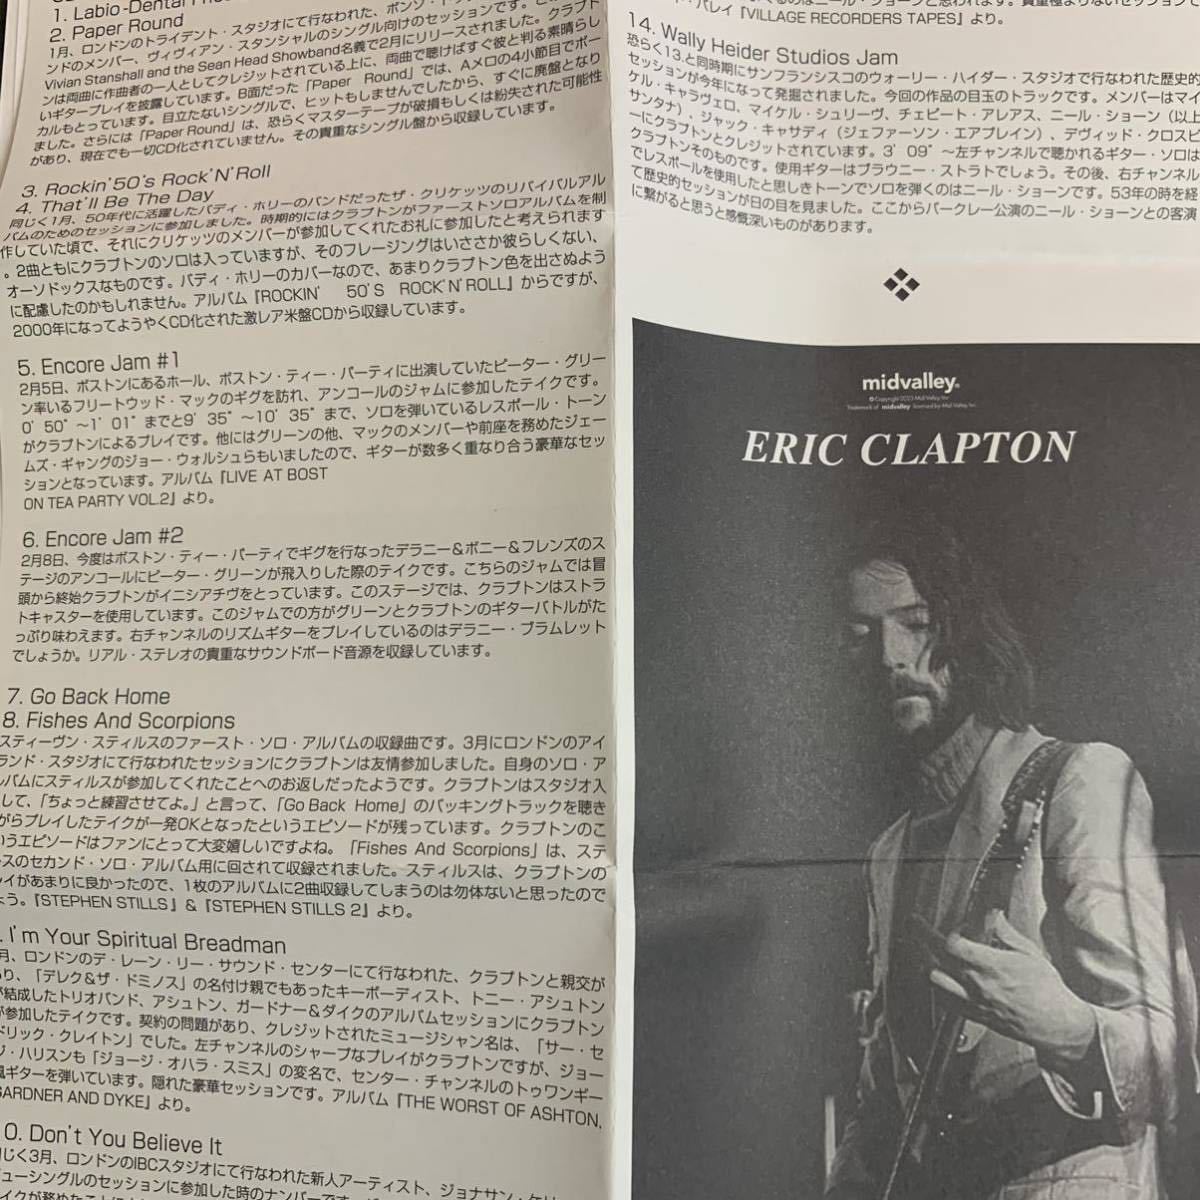 ERIC CLAPTON / 1970 NINETEEN SEVENTY[ Akira день . направление .....](2CD) Mid Valley совершенно первый появление источник звука . содержит 1970 год. стартер .n. сборник ... произведение!